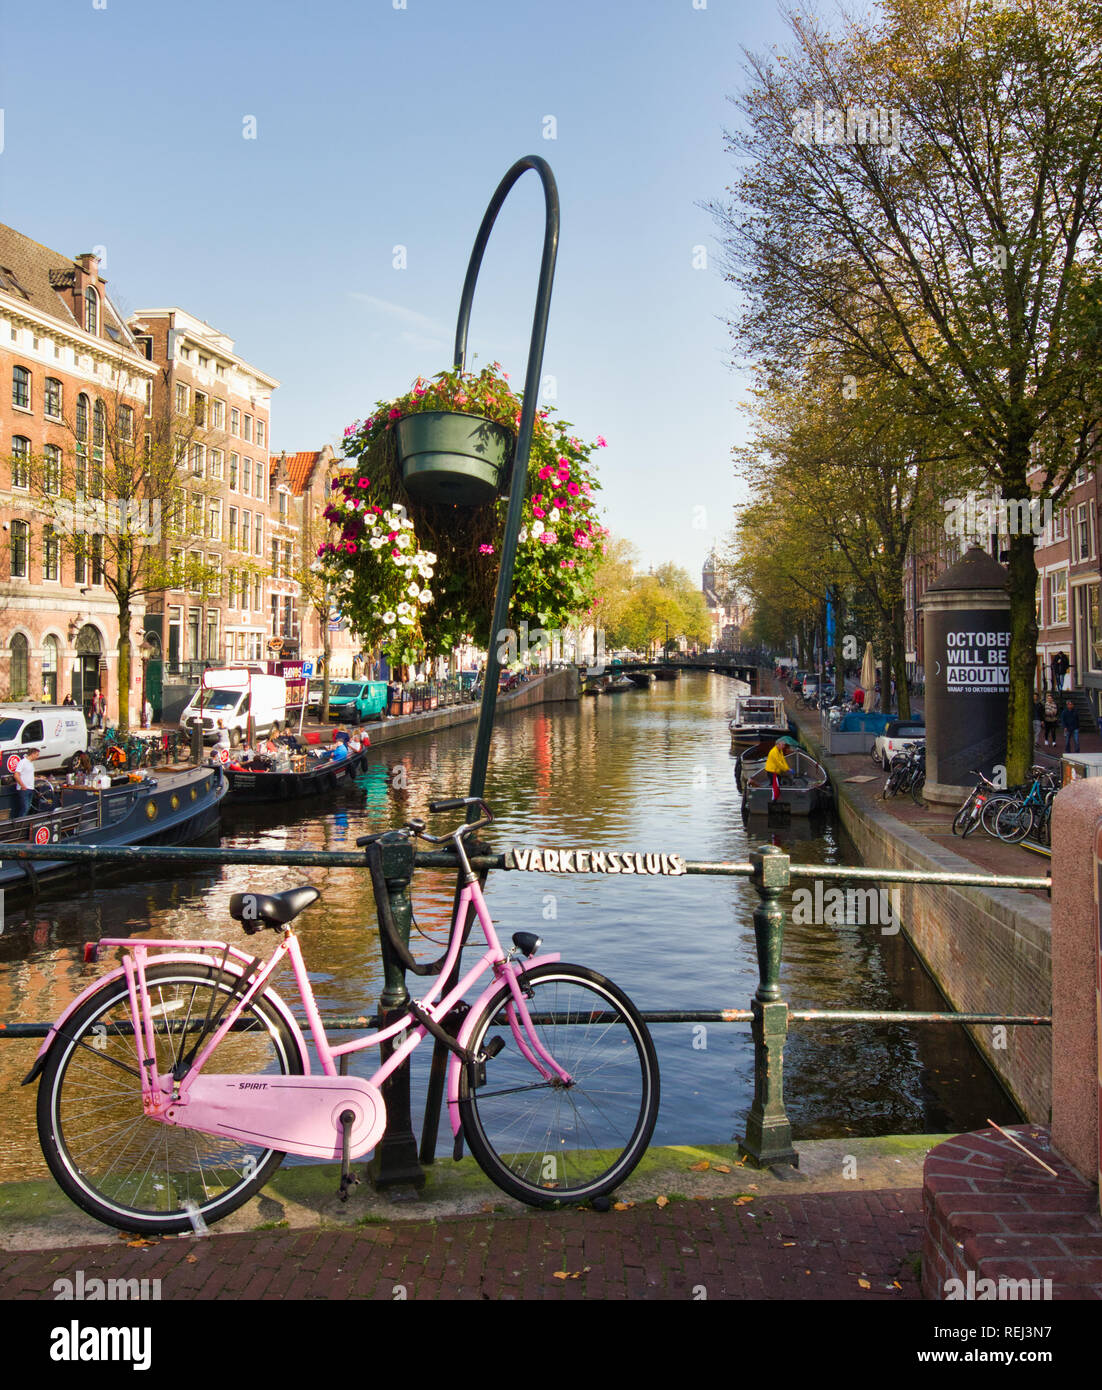 Pink sit up and beg bicycle on Varkenssluis (Varkens Lock, Pig Lock) bridge, Oudezijds Voorburgwal, Red Light District, Amsterdam, Holland, Europe Stock Photo